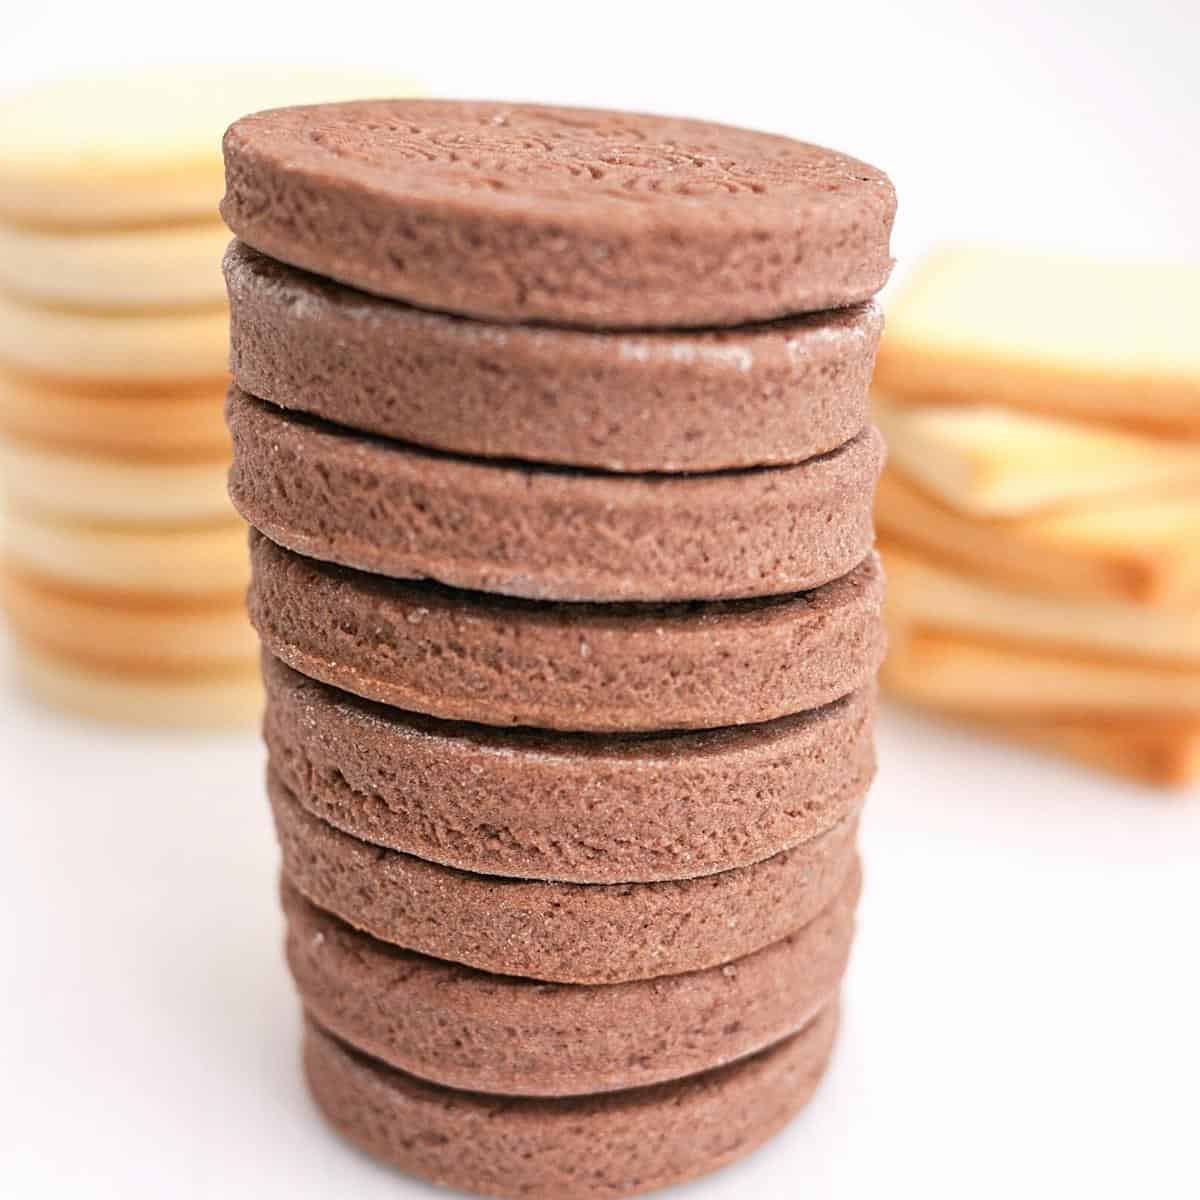 The Best Chocolate Sugar Cookies